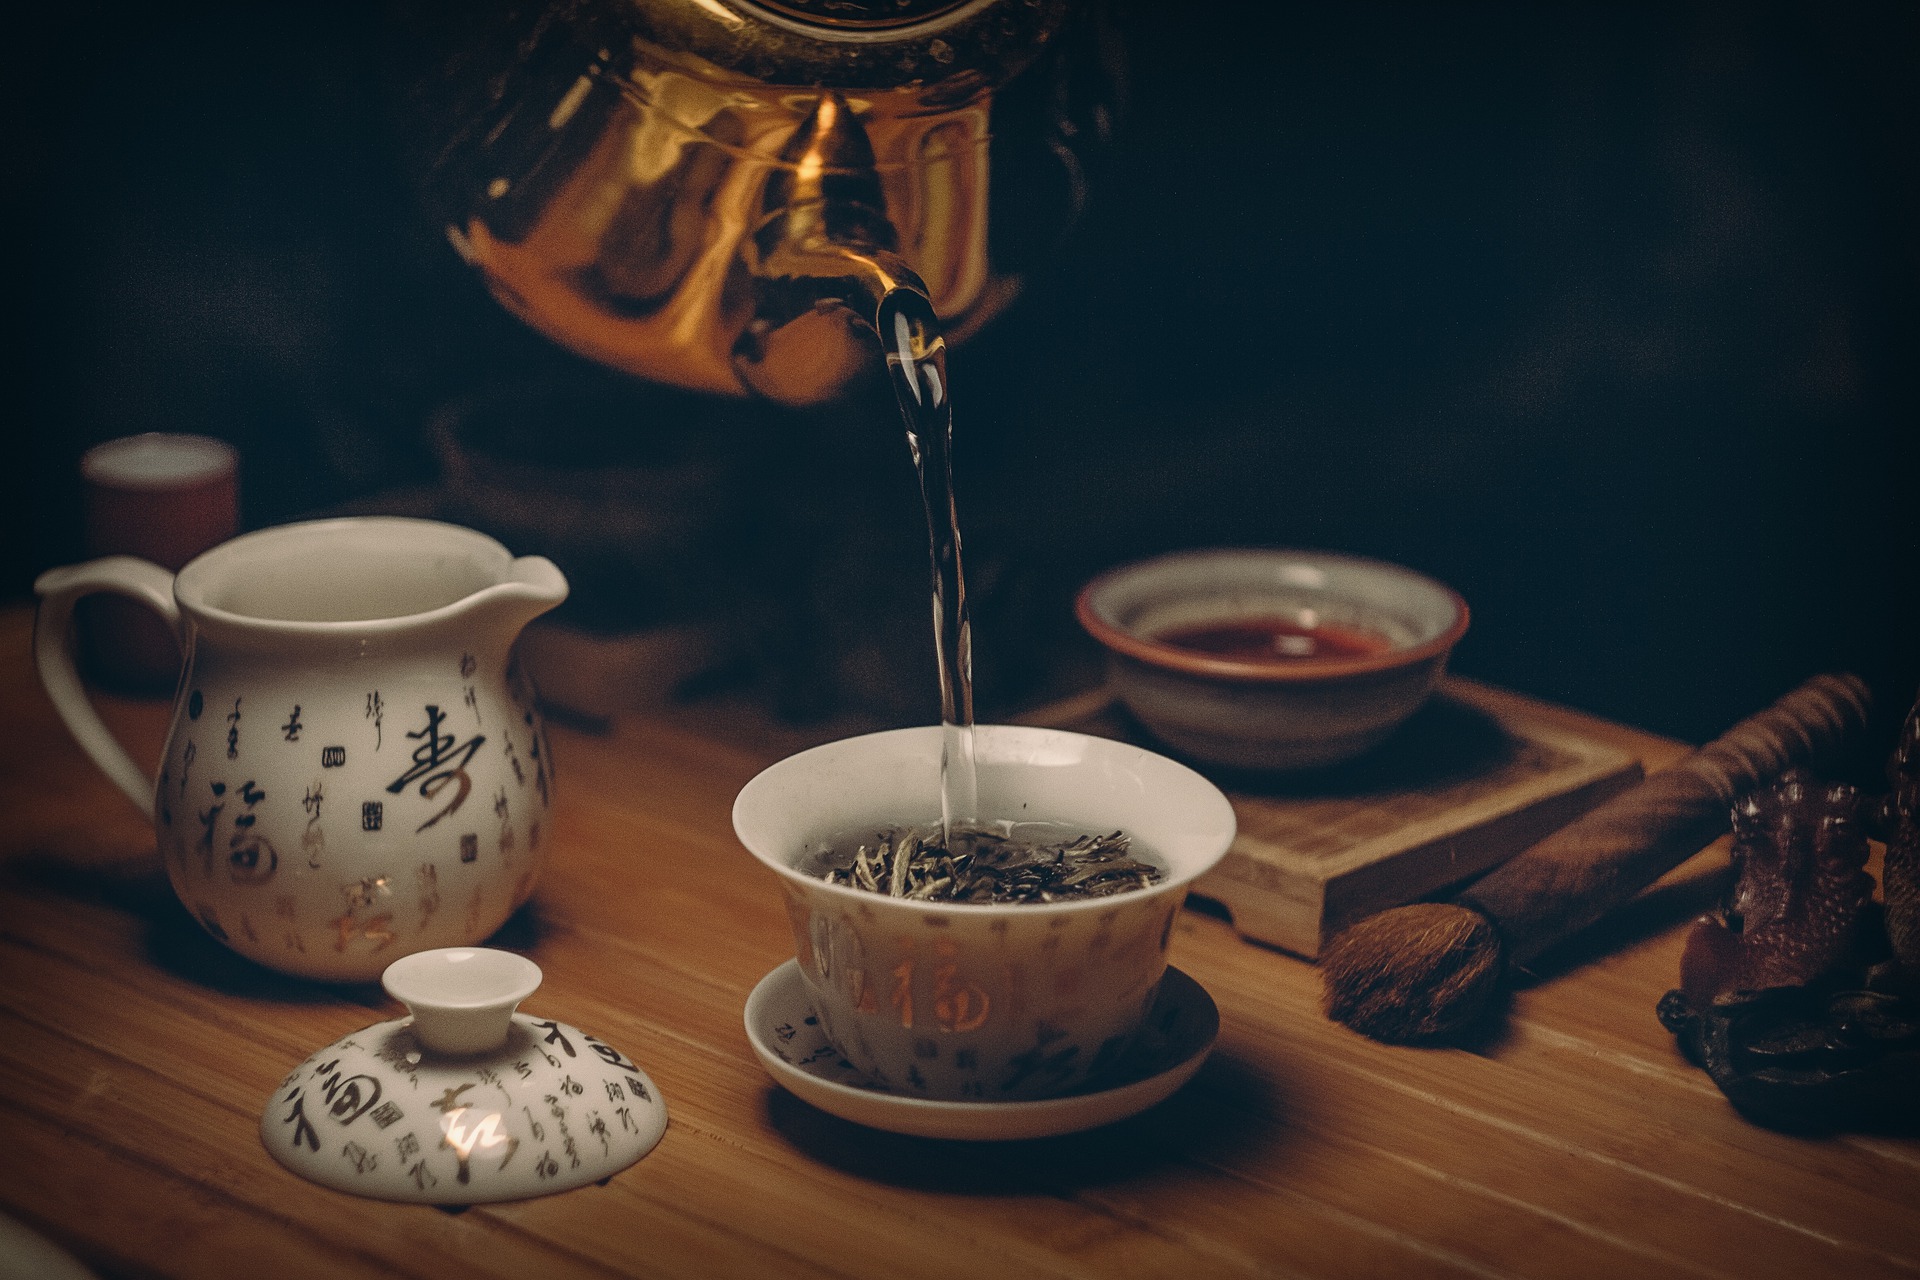 Ispijanje crnog čaja može produljiti životni vijek